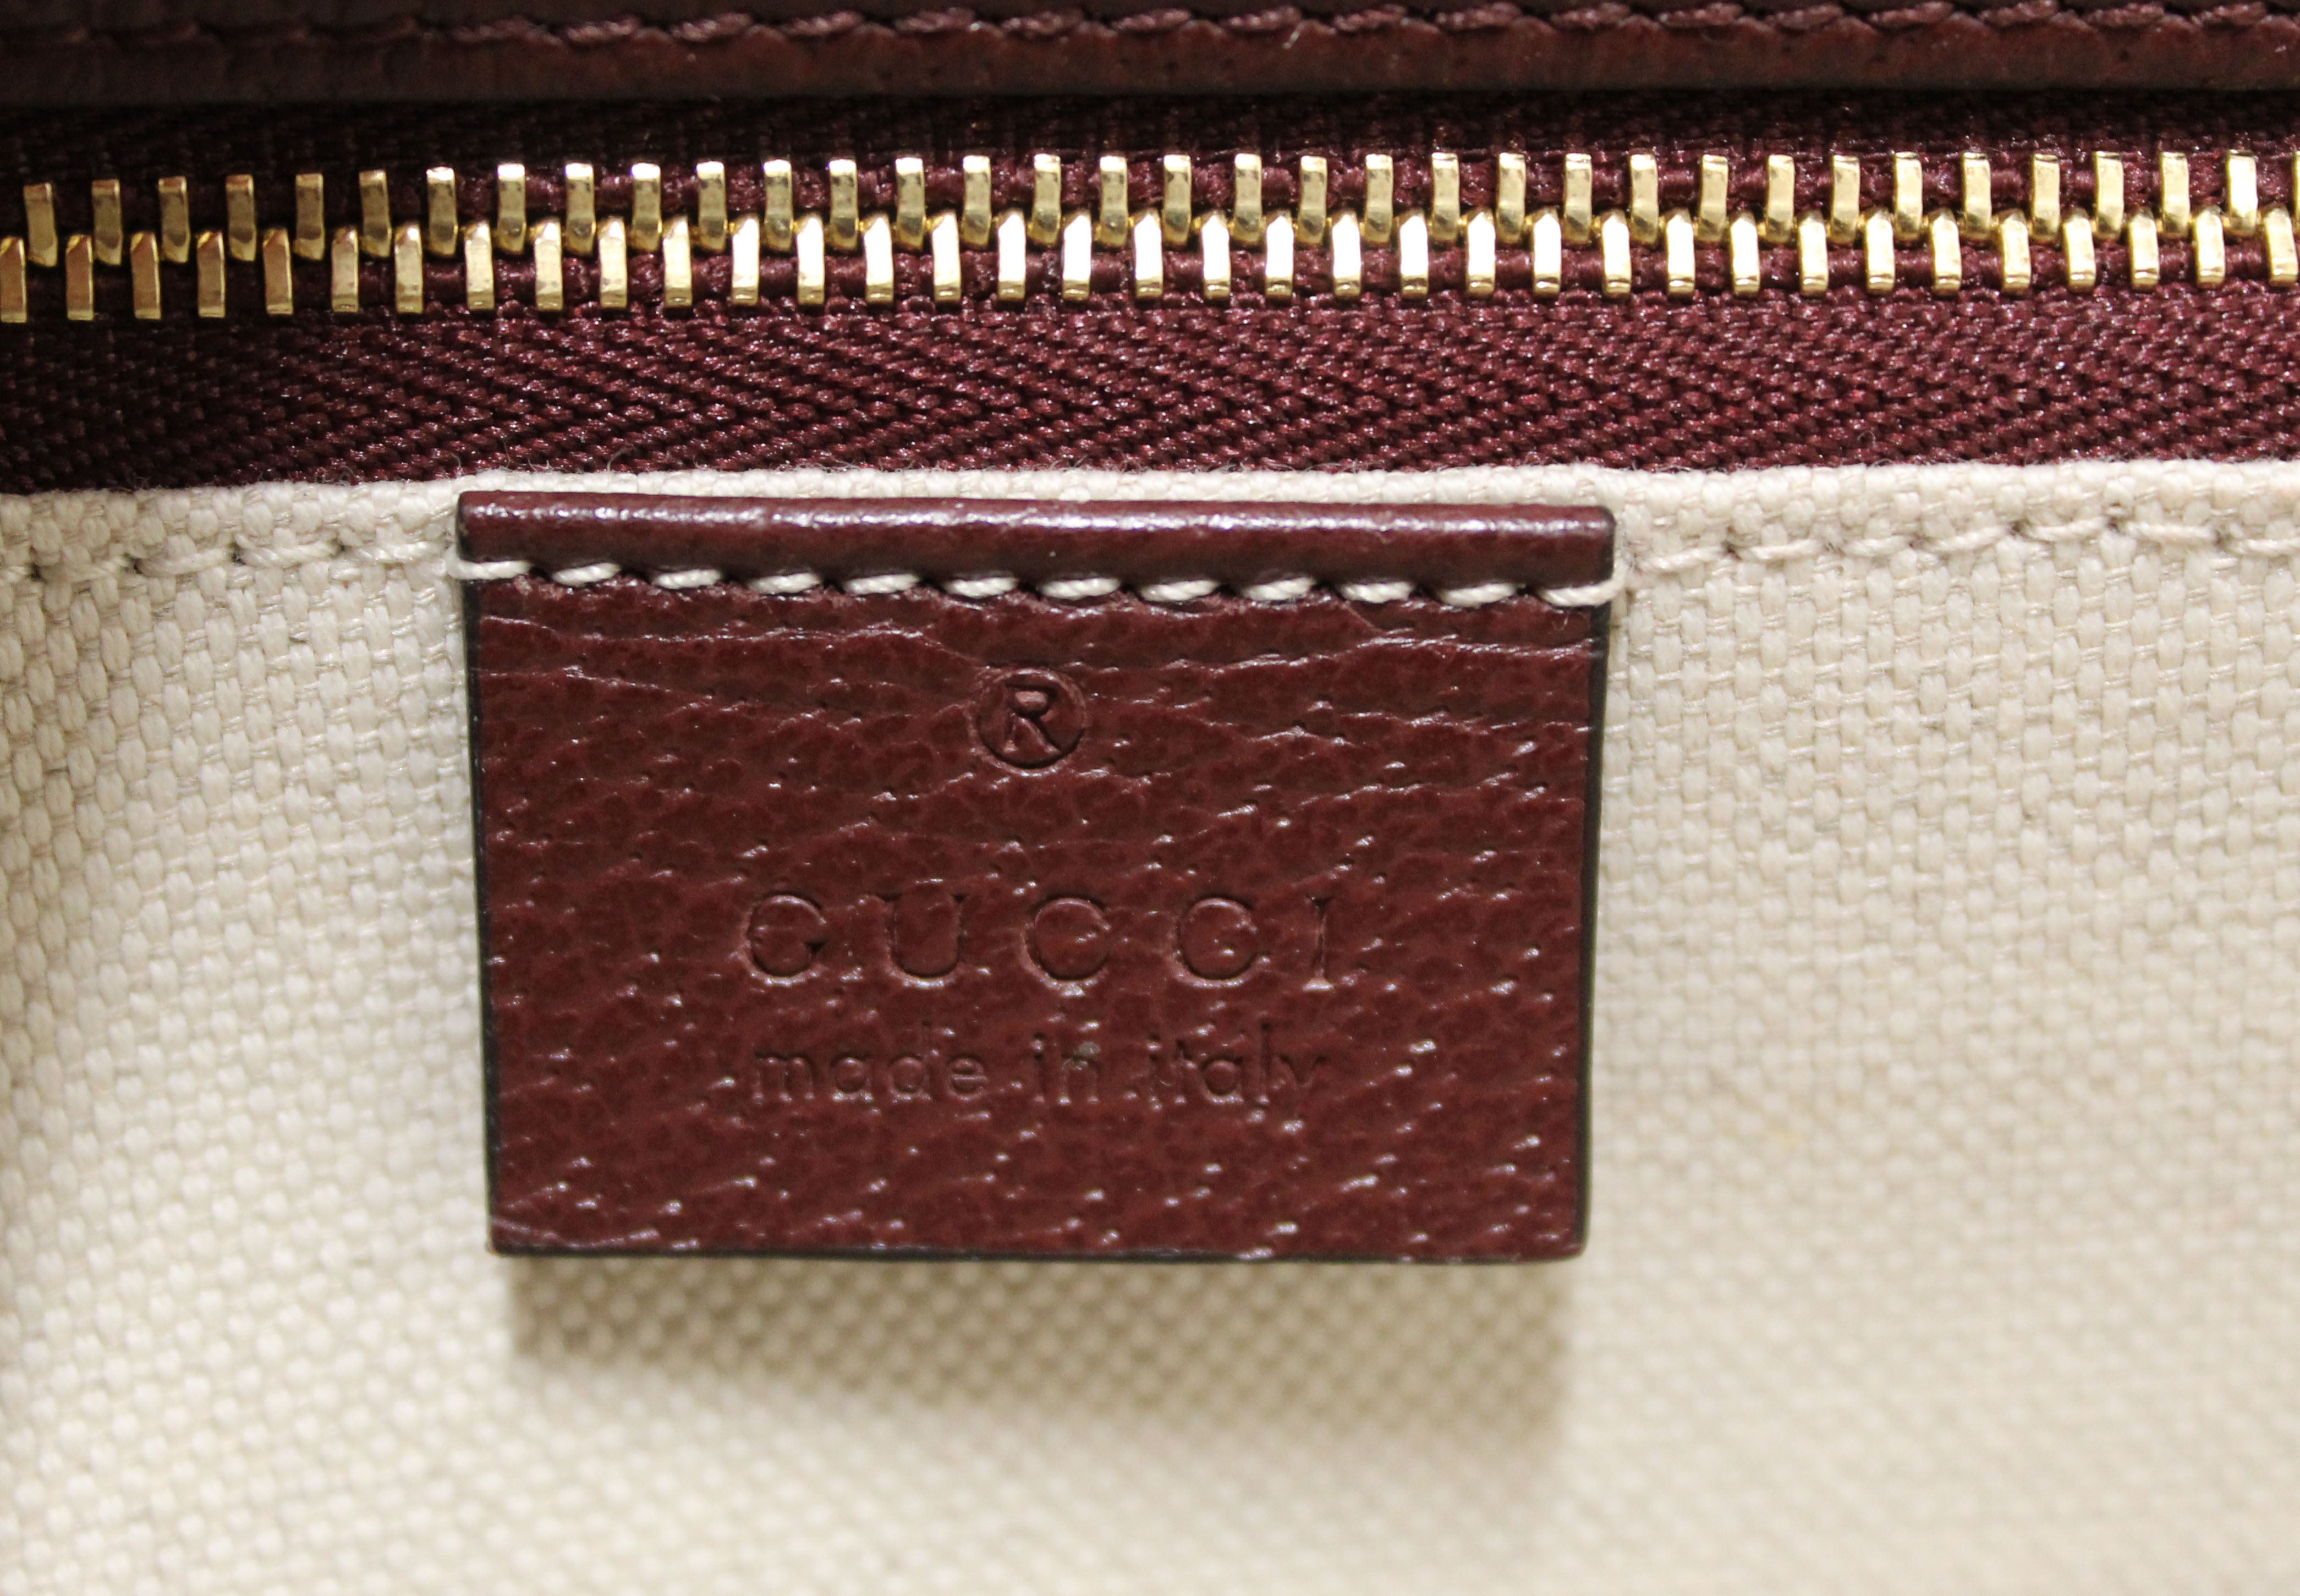 Gucci Horsebit 1955 small shoulder bag - BrandFav